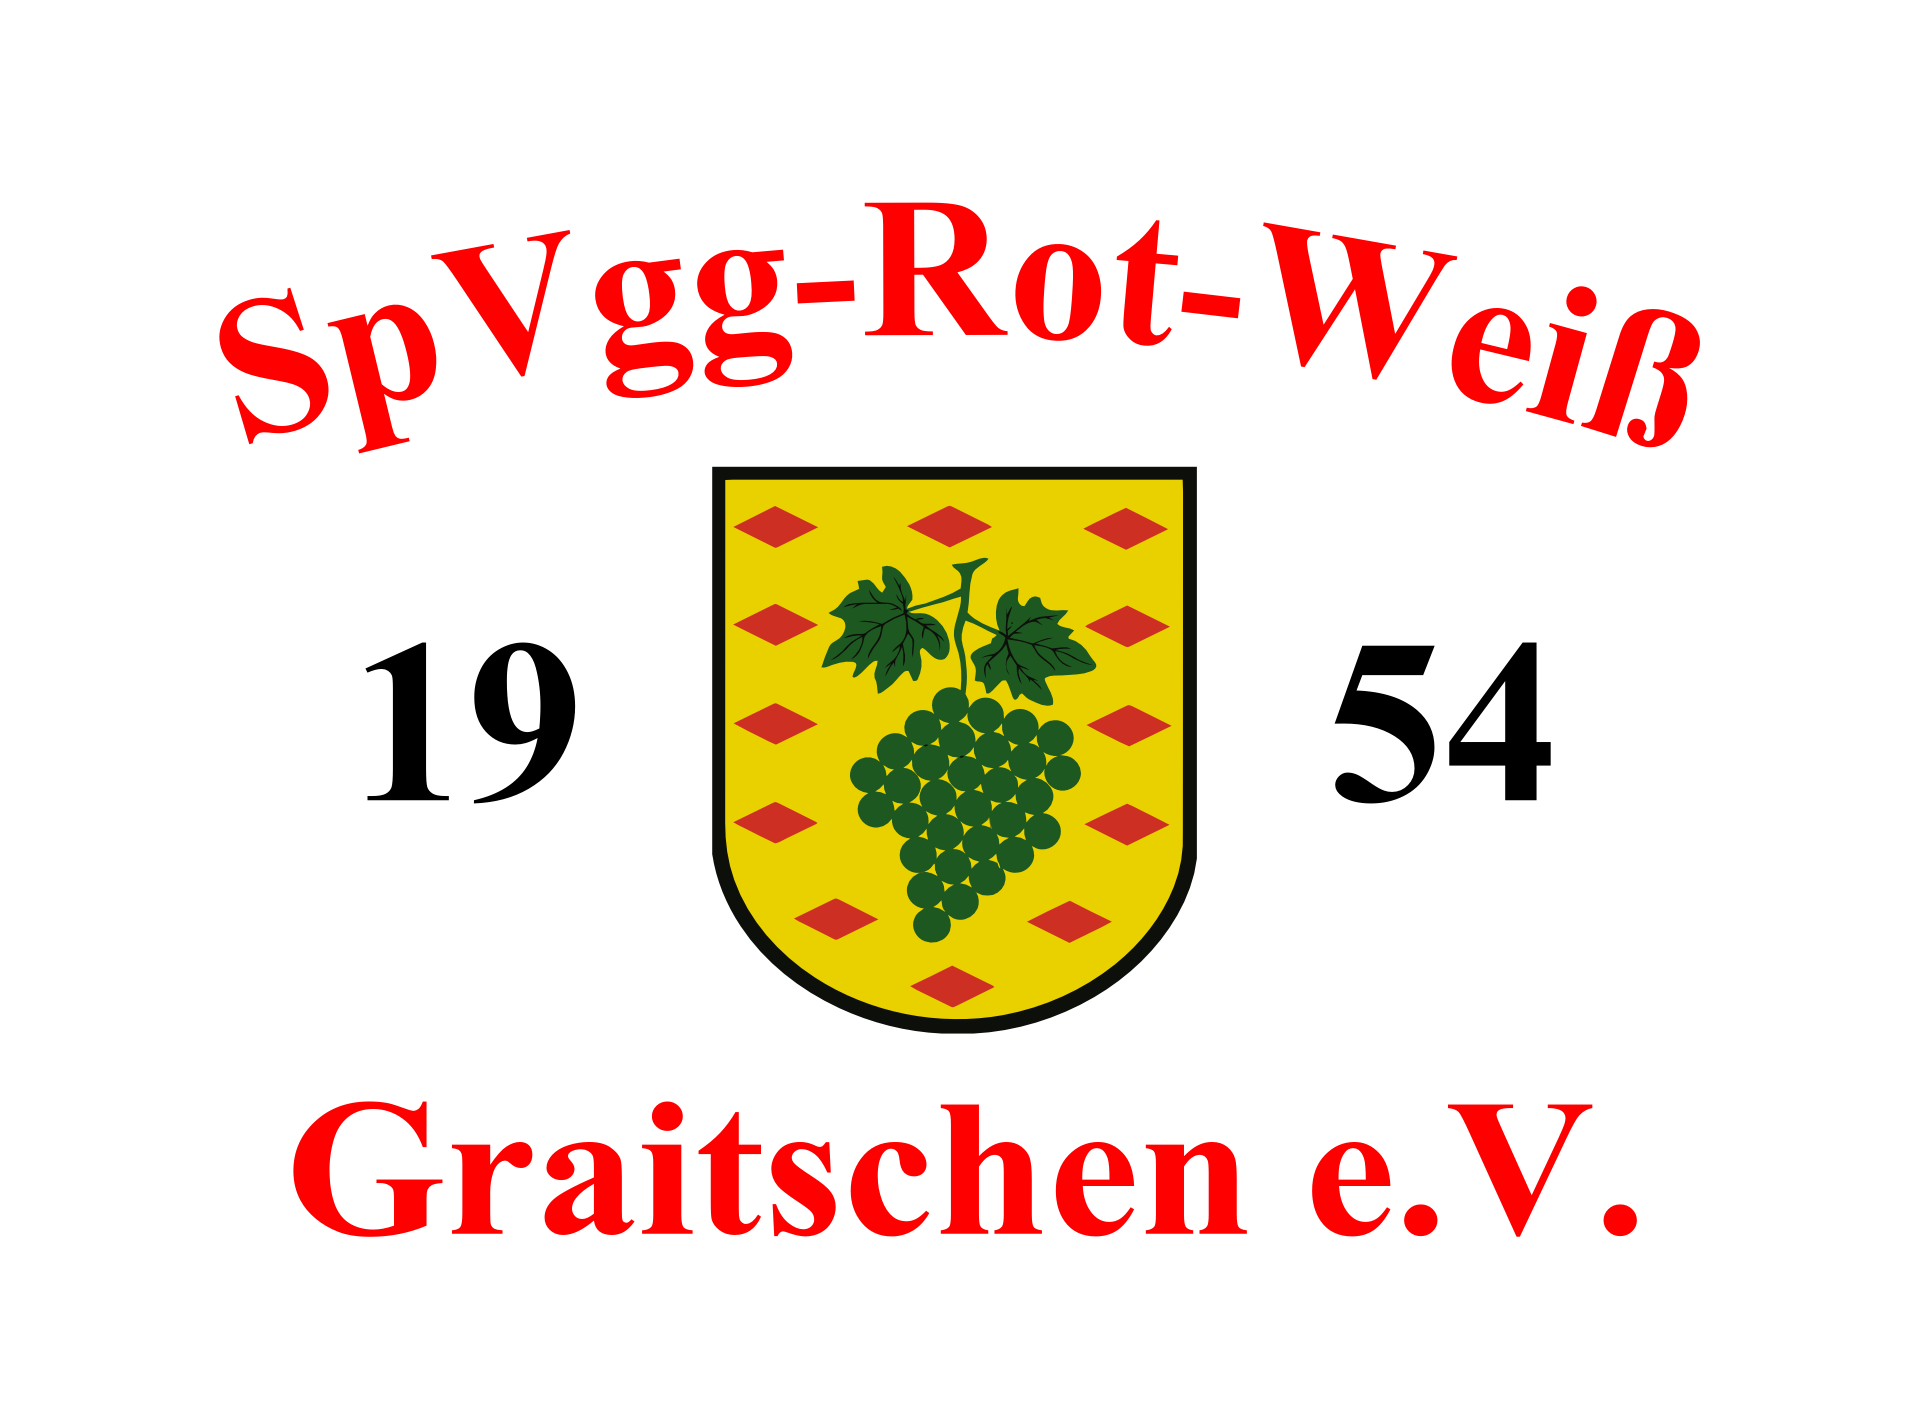 SpVgg Rot-Weiß Graitschen e.V.